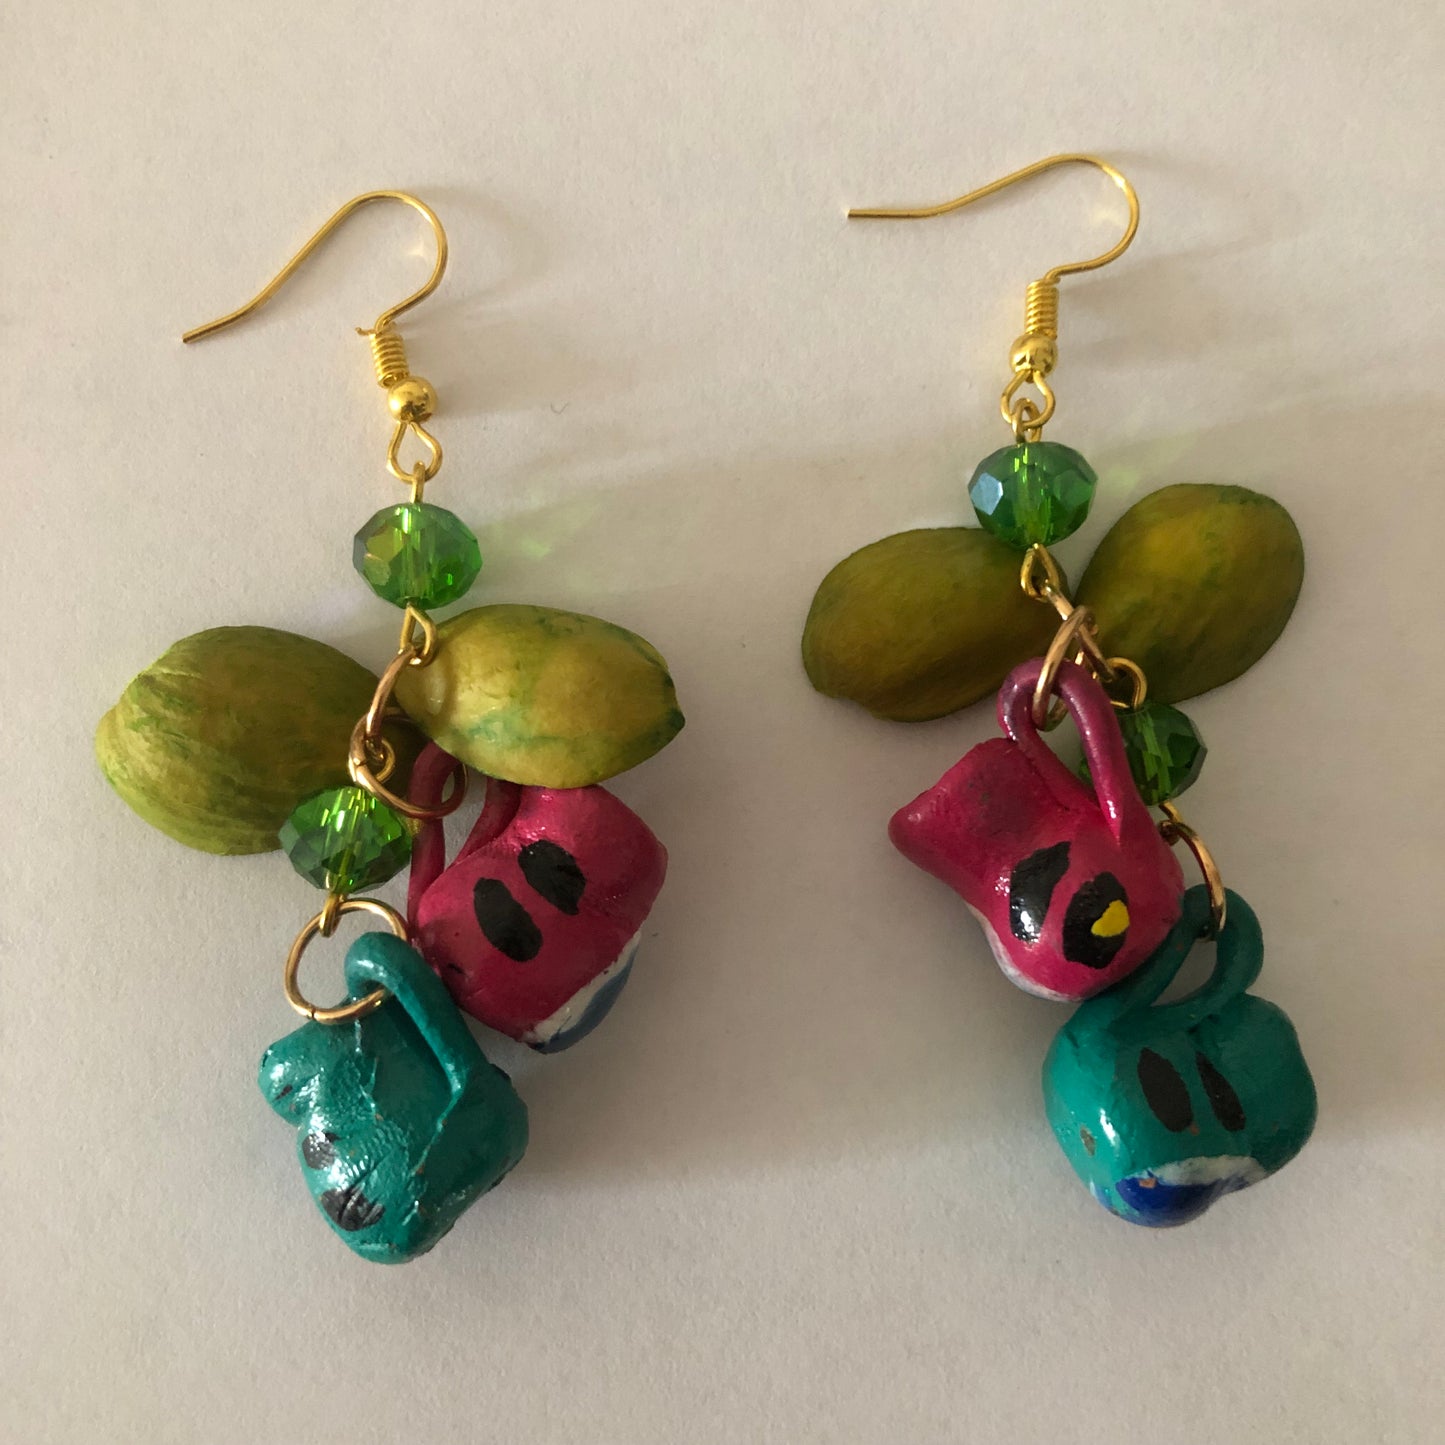 Cantaritos earrings